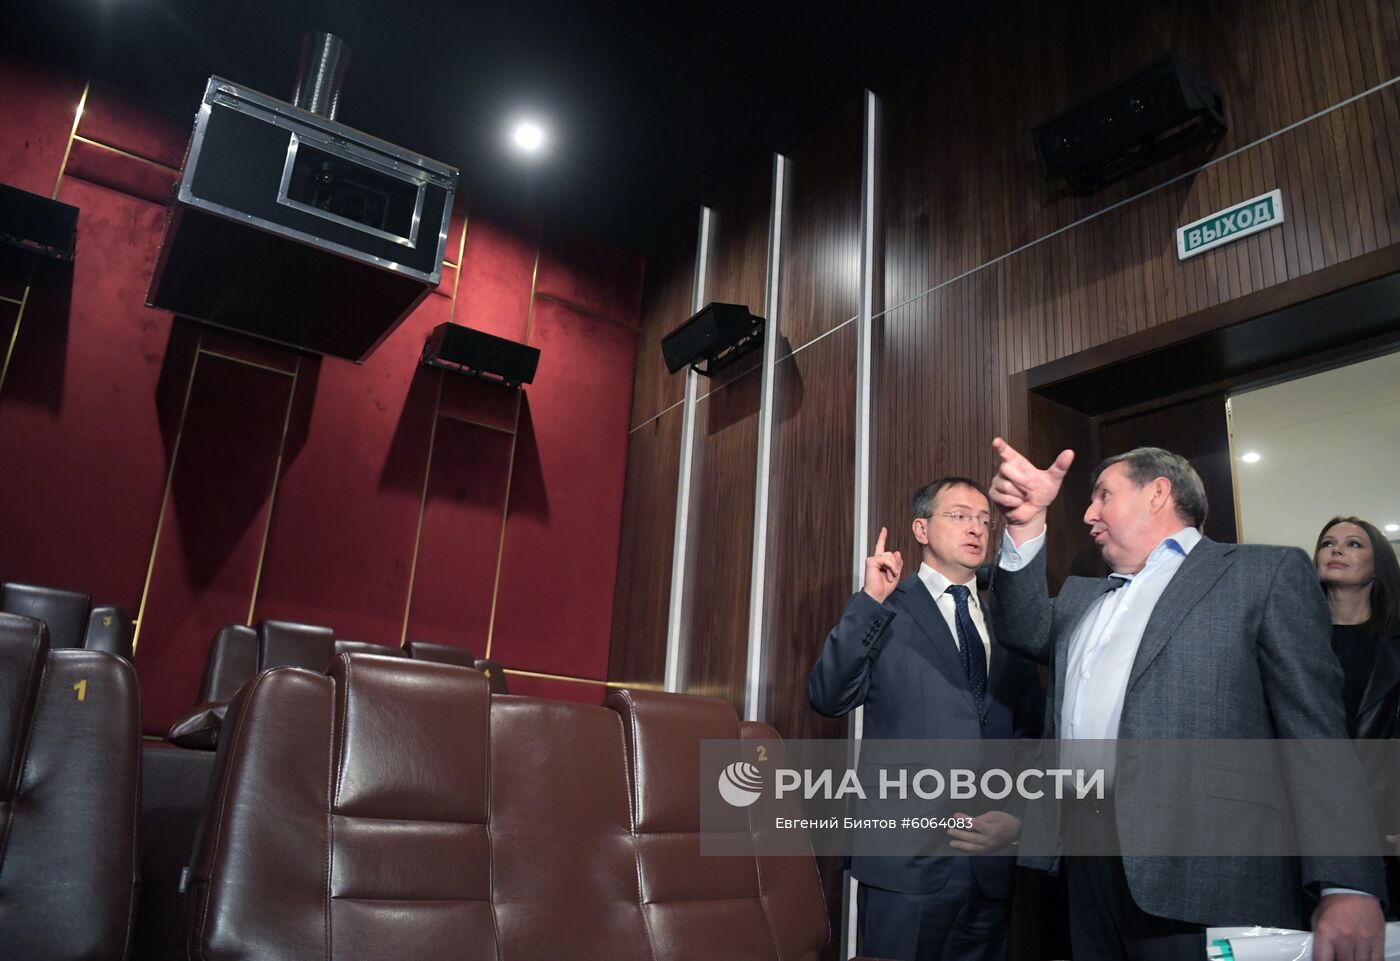 Открытие новых vip-залов в кинотеатре "Иллюзион"